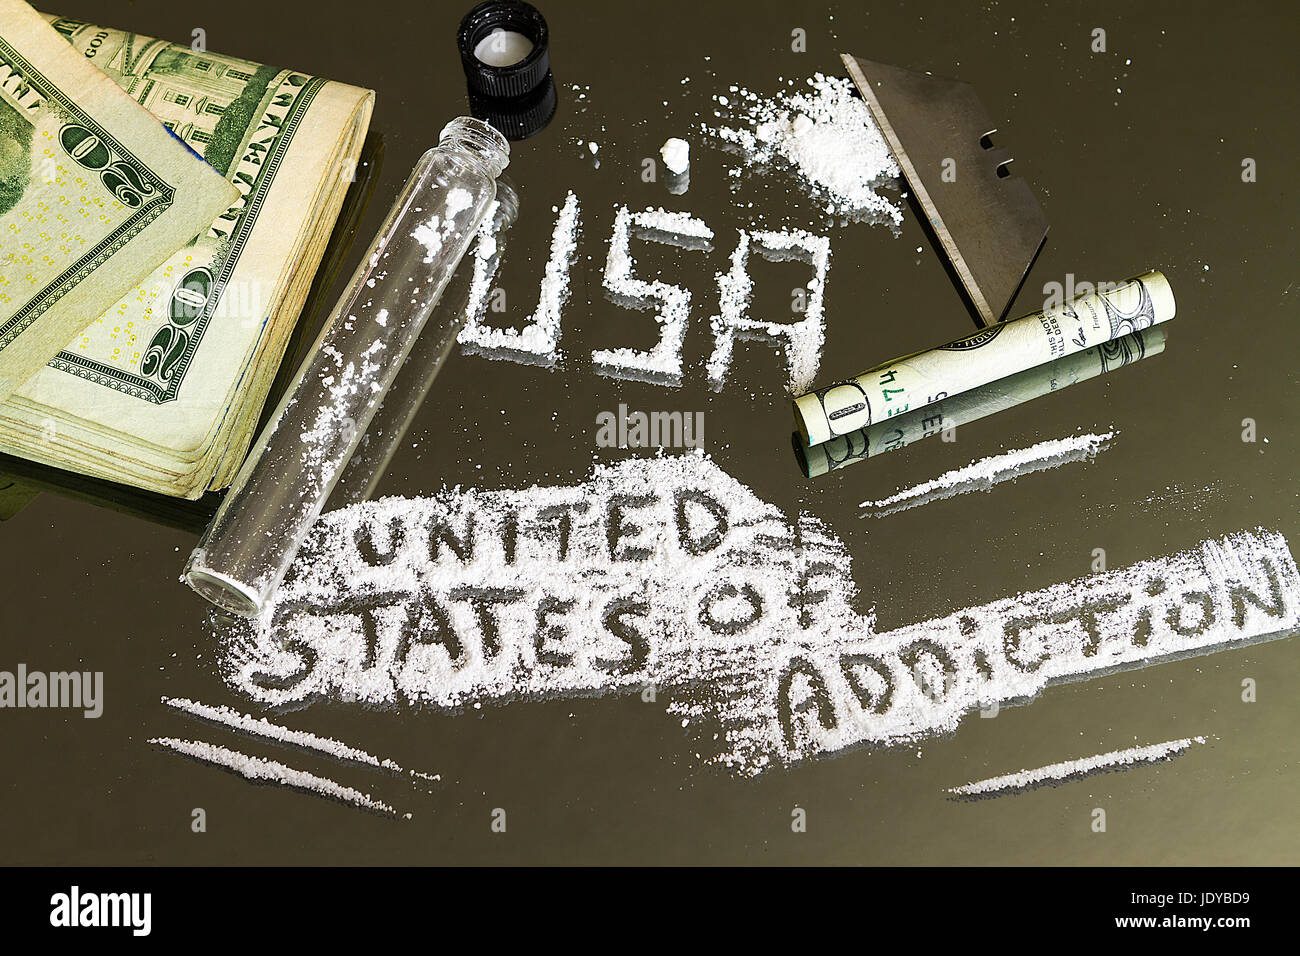 Épidémie de drogues de l'Amérique a été fortement à la lumière dans ces dernières années et ces derniers mois et se concentre fortement sur la toxicomanie aux opiacés a souffert par beaucoup. Banque D'Images